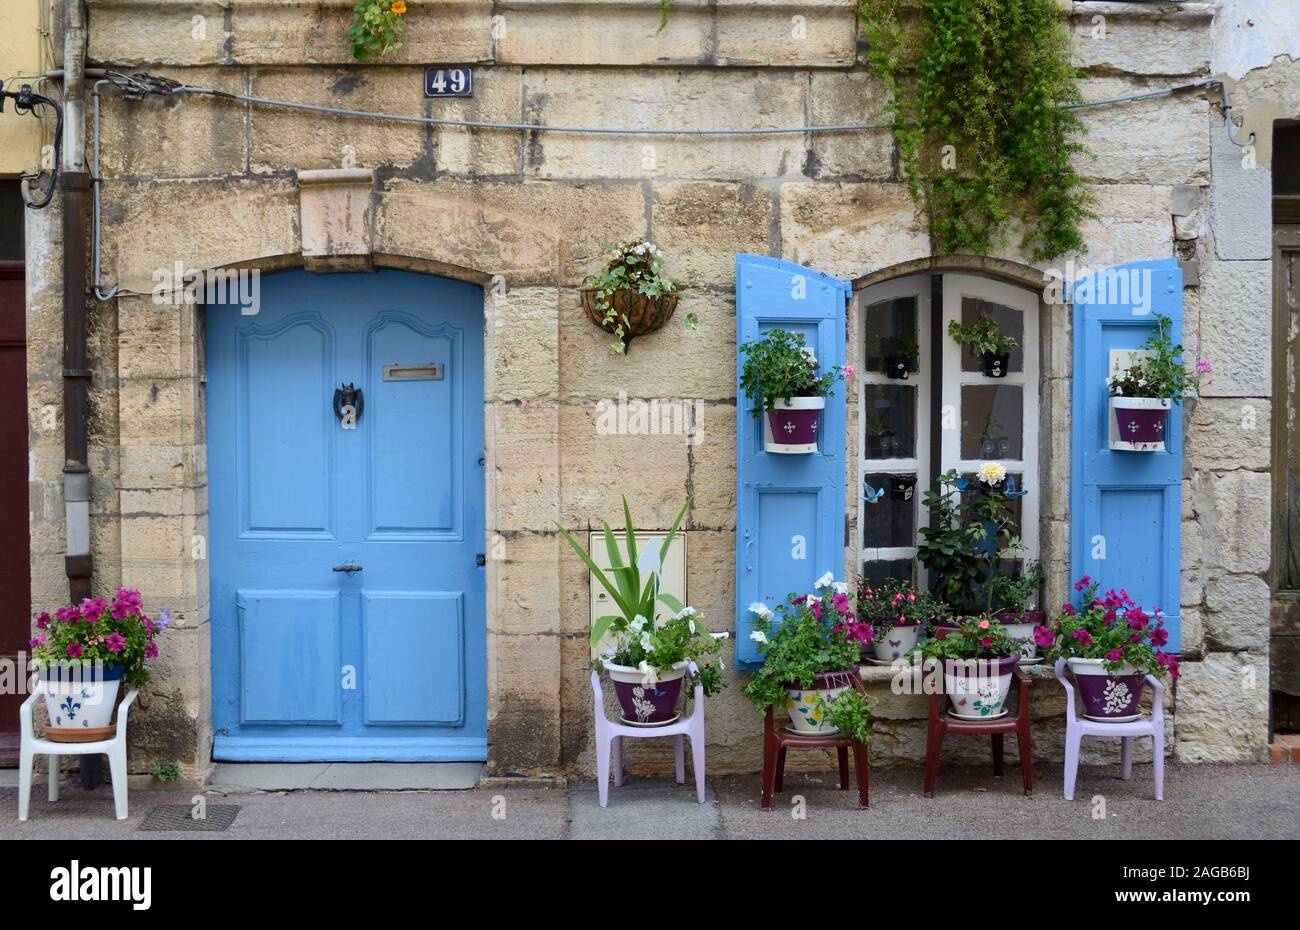 Maison de Village décorée avec porte bleue, les volets bleus et les plantes en pots décorant la façade de Trans-en-Provence Var Provence France Banque D'Images